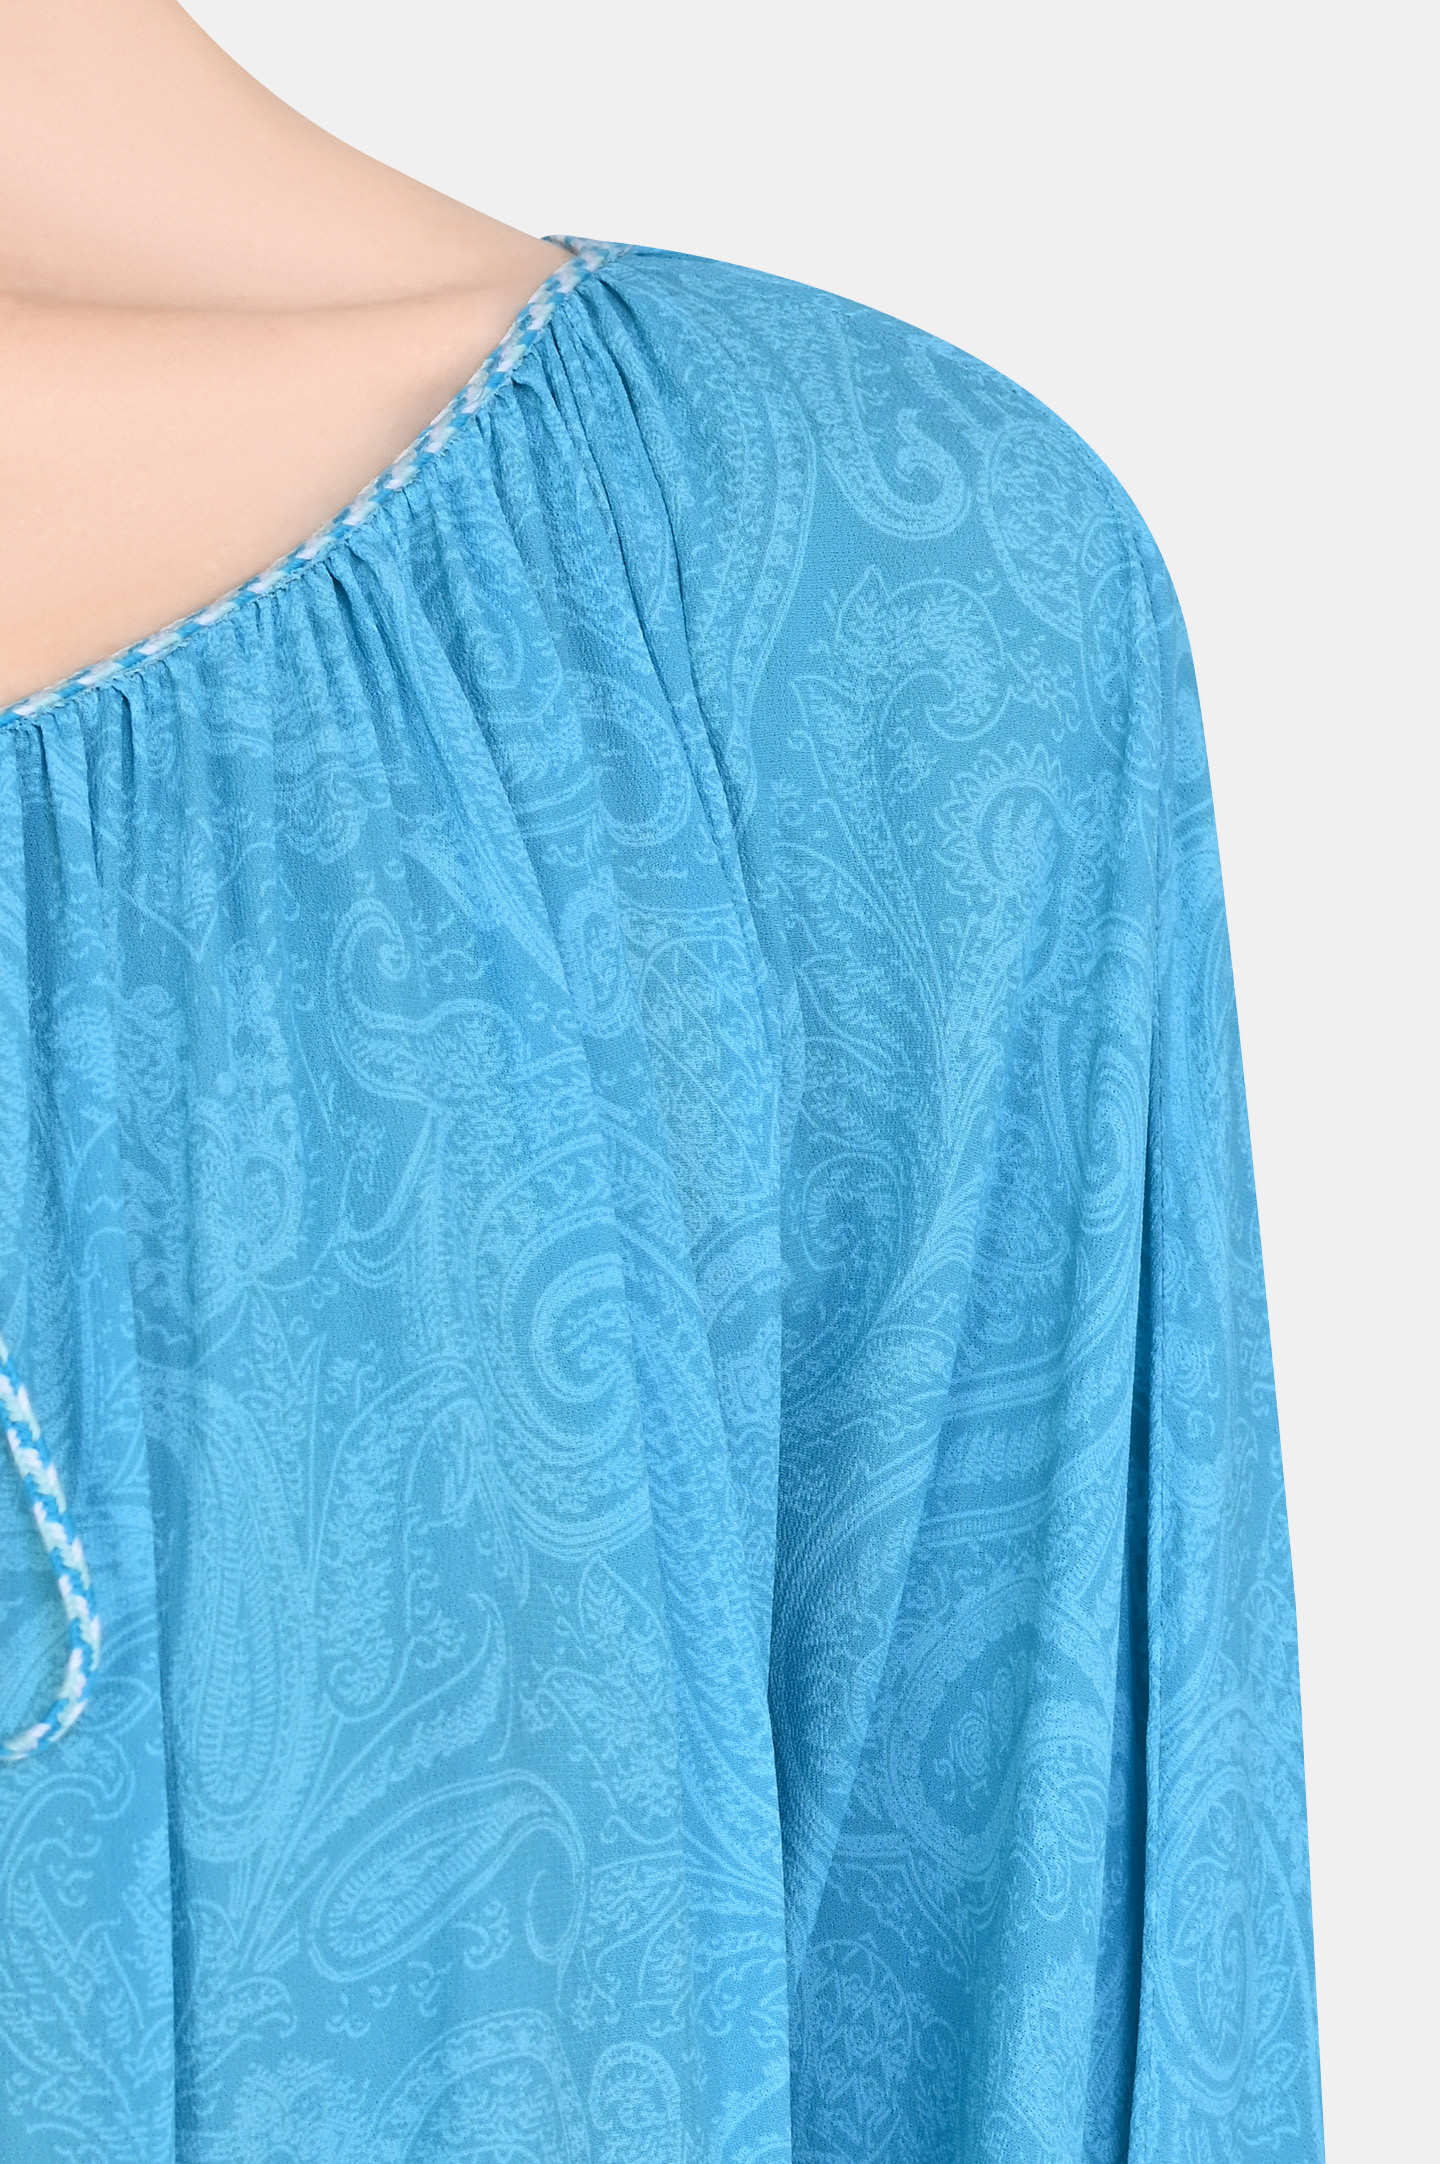 Блуза ETRO 12647 4535, цвет: Голубой, Женский